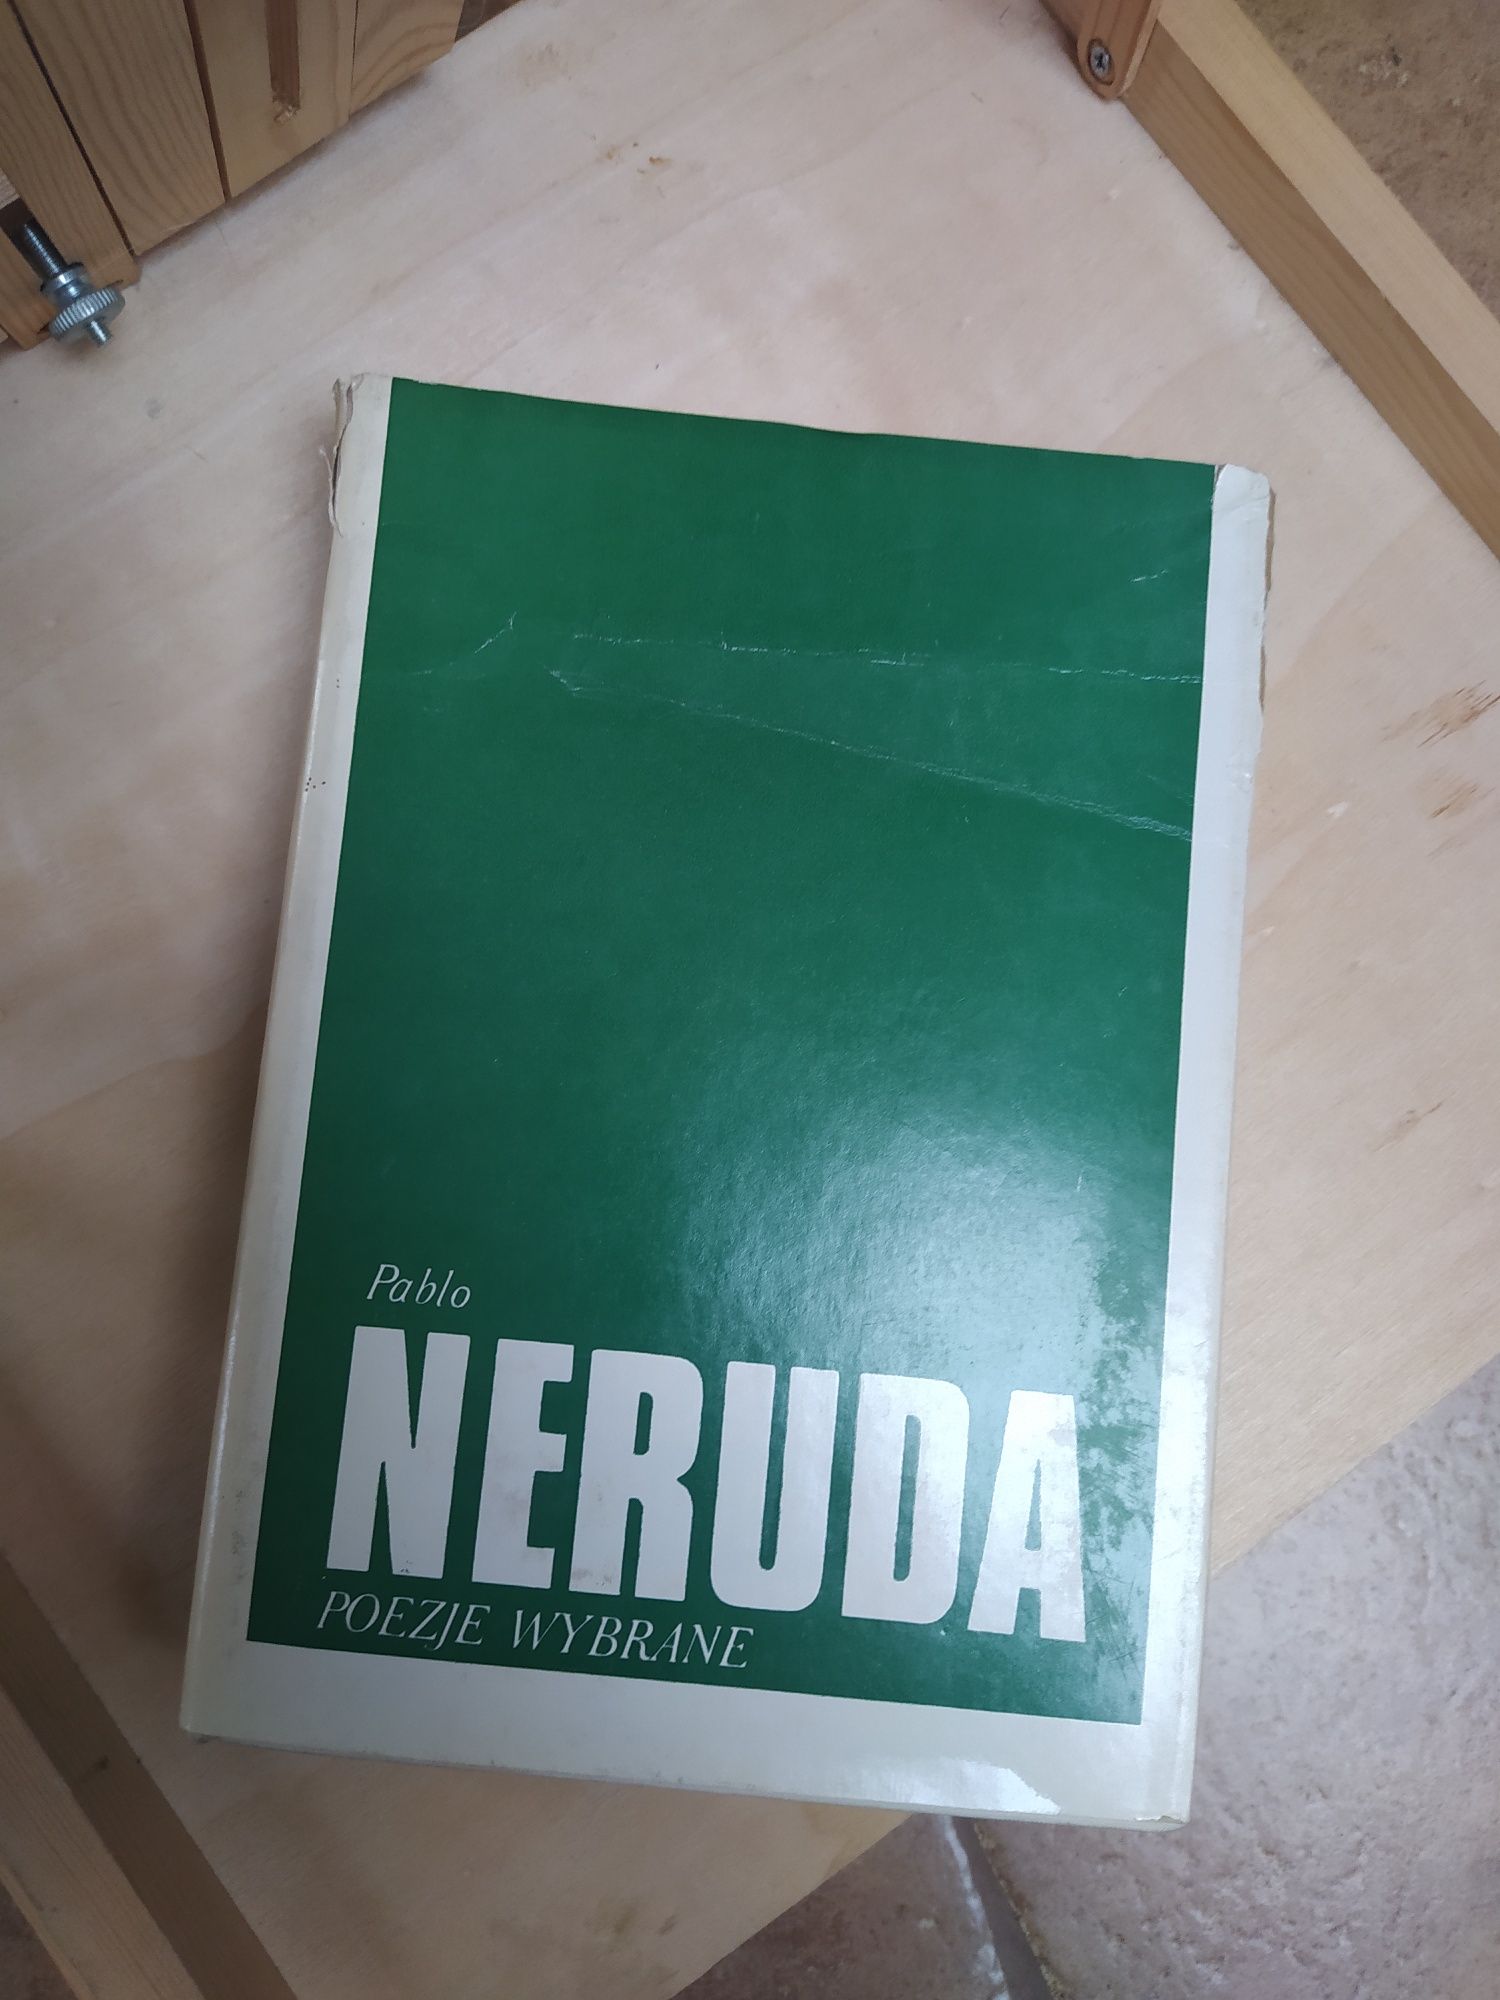 Poezje wybrane. Pablo Neruda (ślady używania)